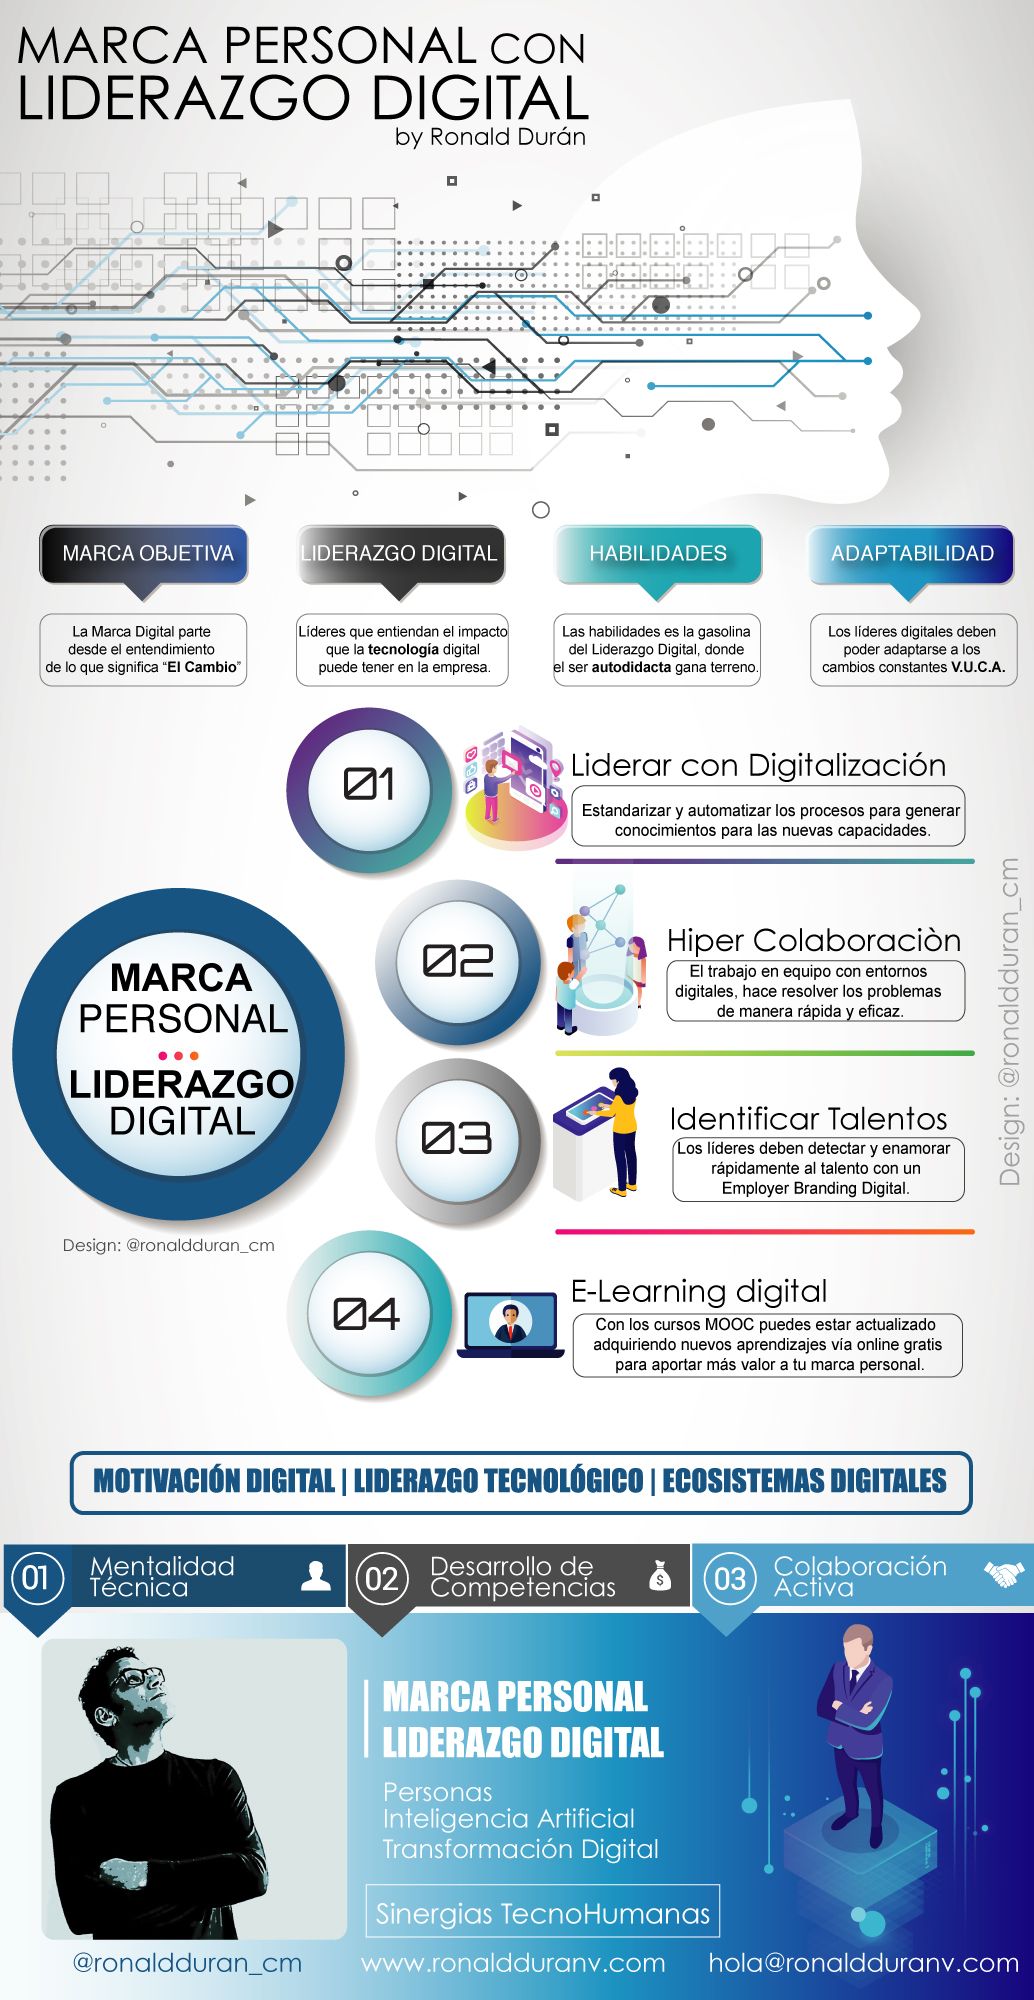 Infografia - Marca Personal con Liderazgo Digital #infografia #infographic #marcapersonal - TICs y Formación